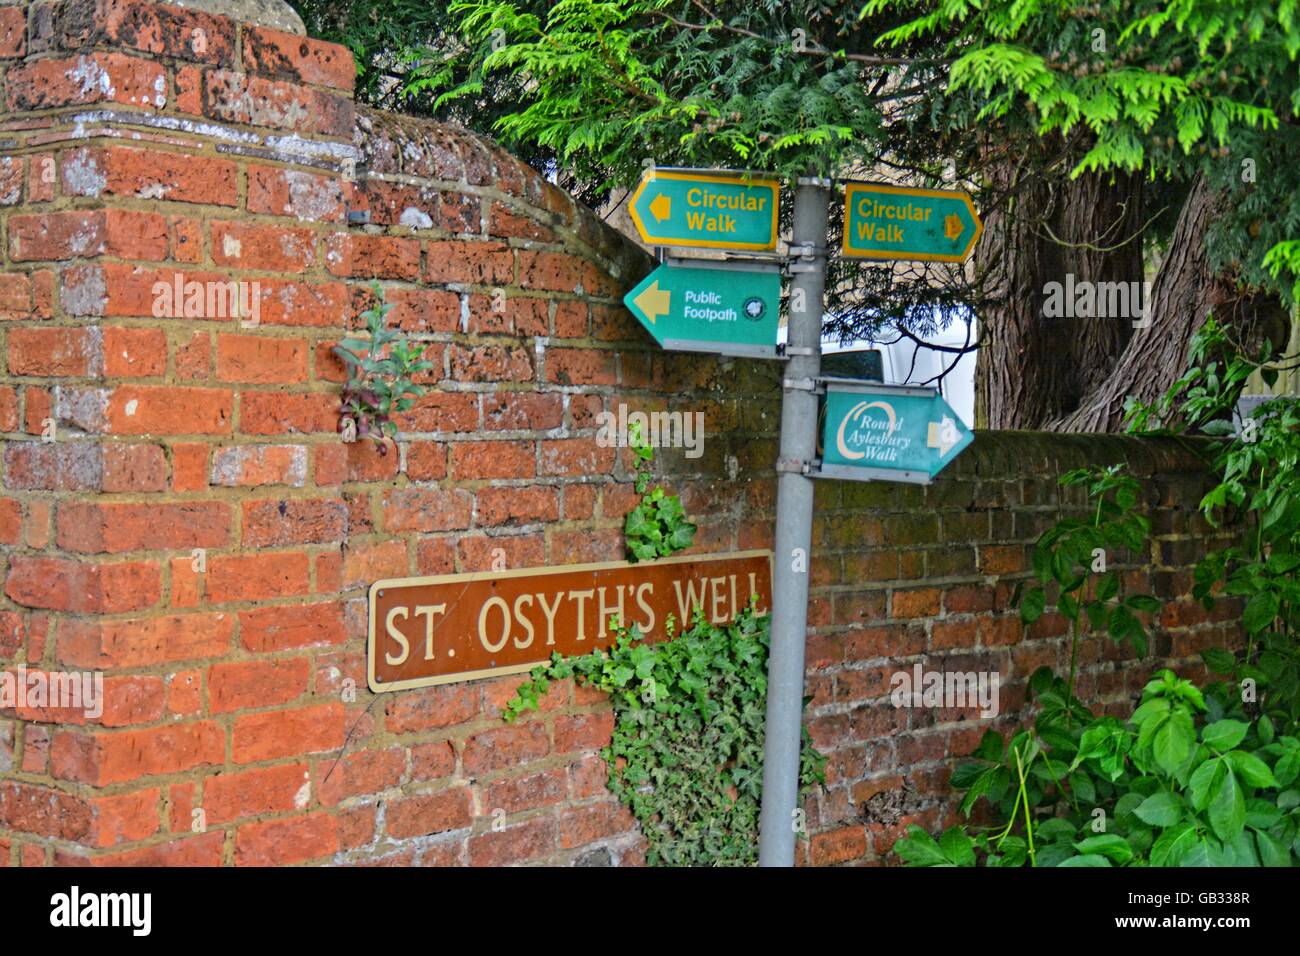 Str. Osyths Well, England - Str. Osyths Well, England - Spring von einer sächsischen Prinzessin Stockfoto